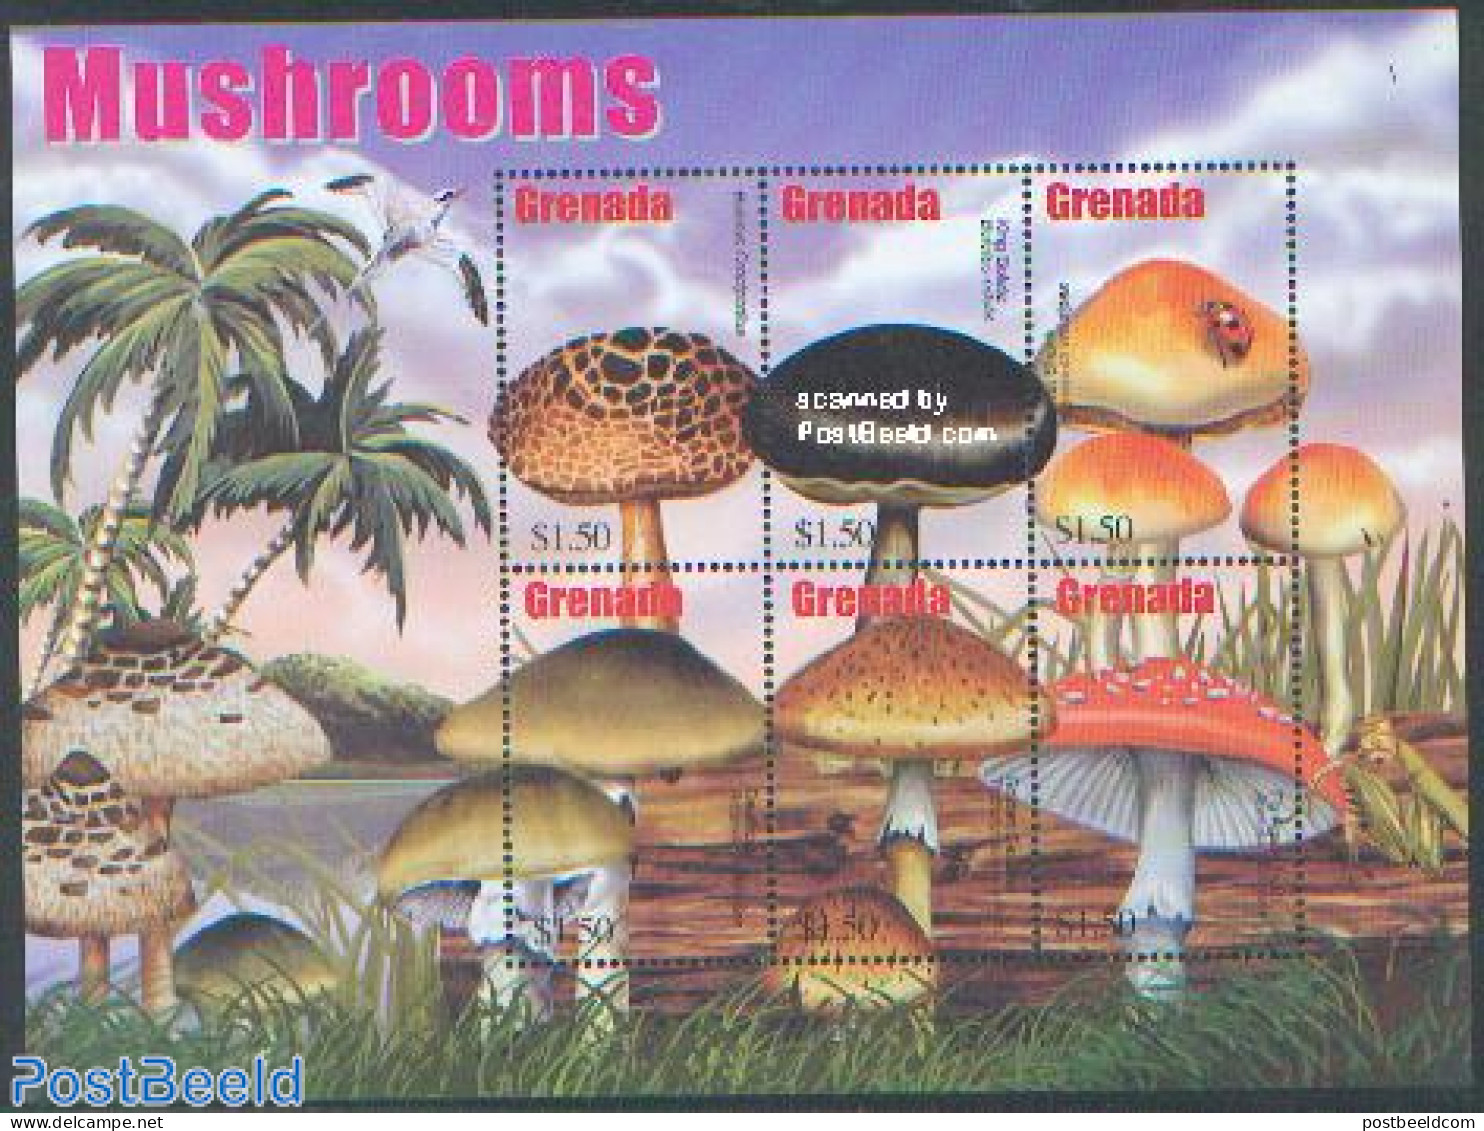 Grenada 2002 Mushrooms 6v M/s /Boletus Crocipodius, Mint NH, Nature - Mushrooms - Mushrooms